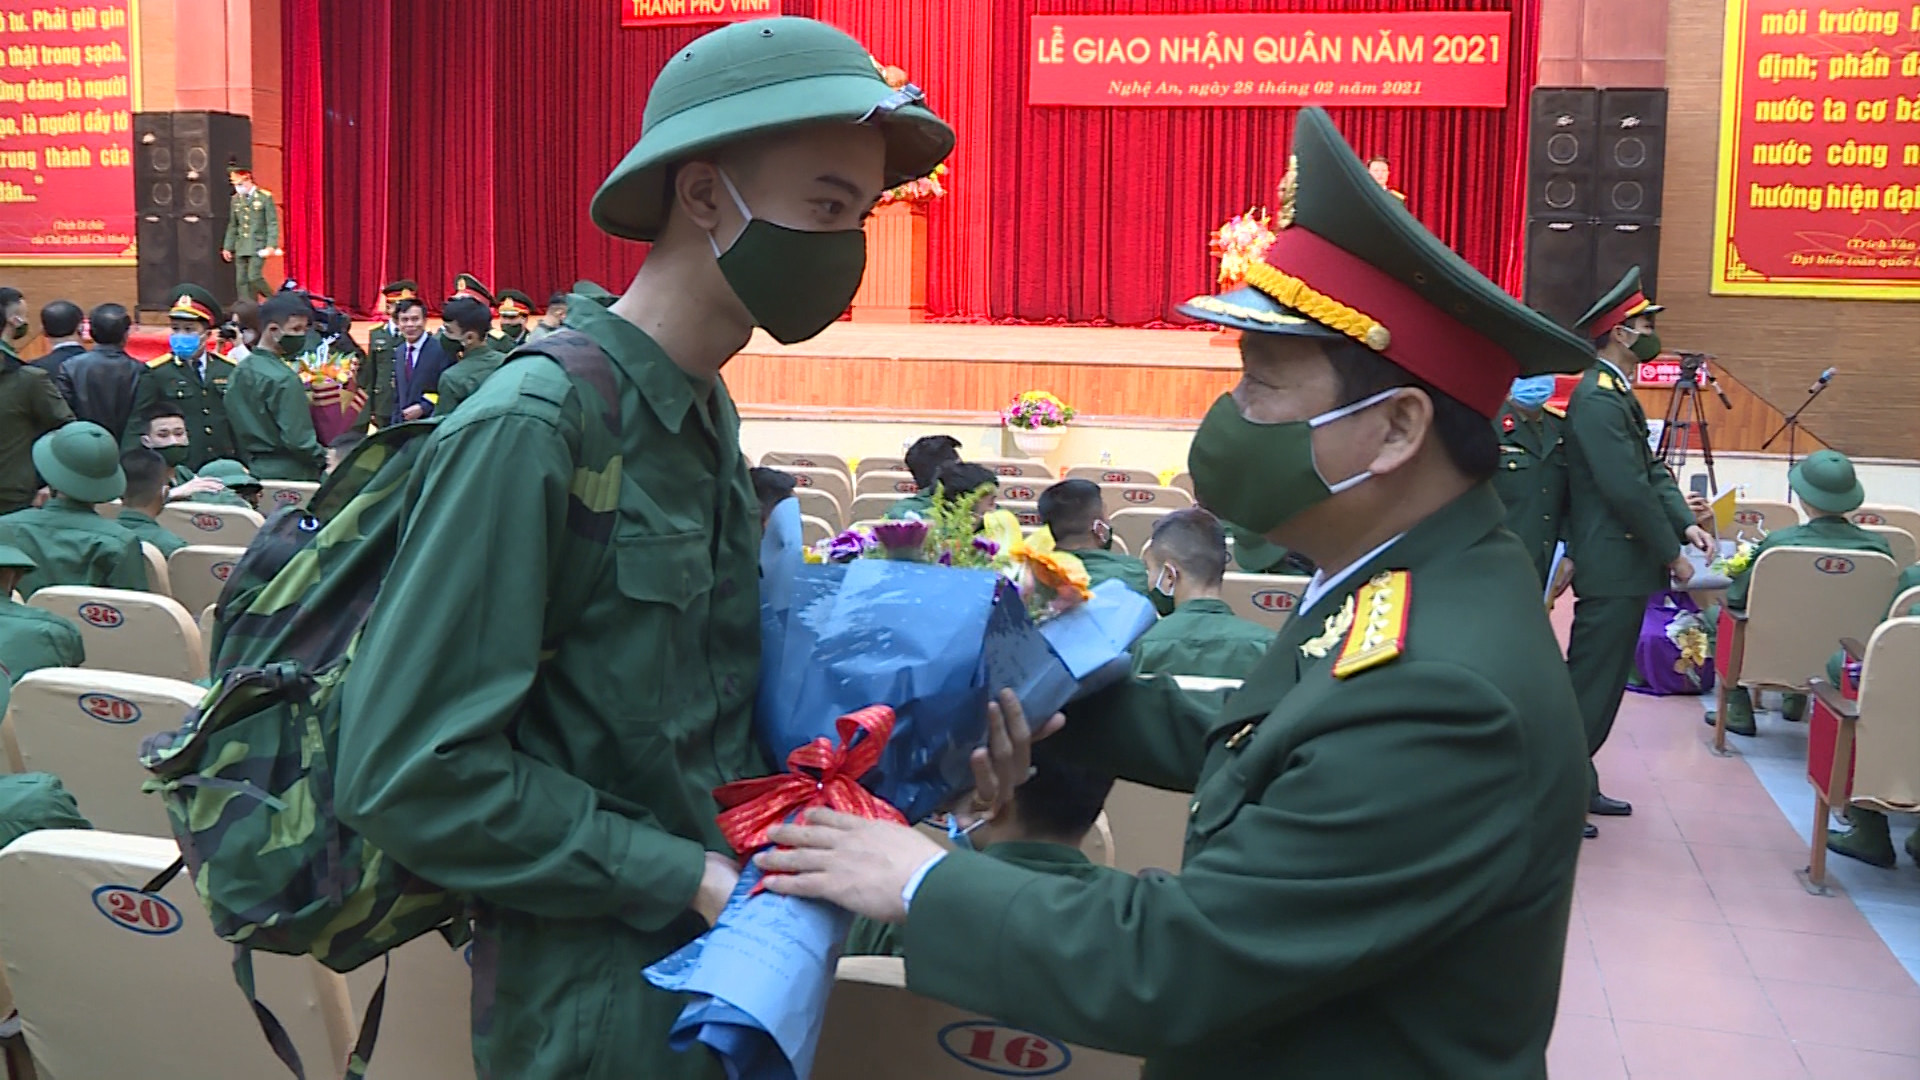 Đại tá Nguyễn Ngọc Hà - Chỉ huy trưởng Bộ Chỉ huy Quân sự tỉnh động viên tân binh lên đường nhập ngũ. Ảnh: Trọng Kiên